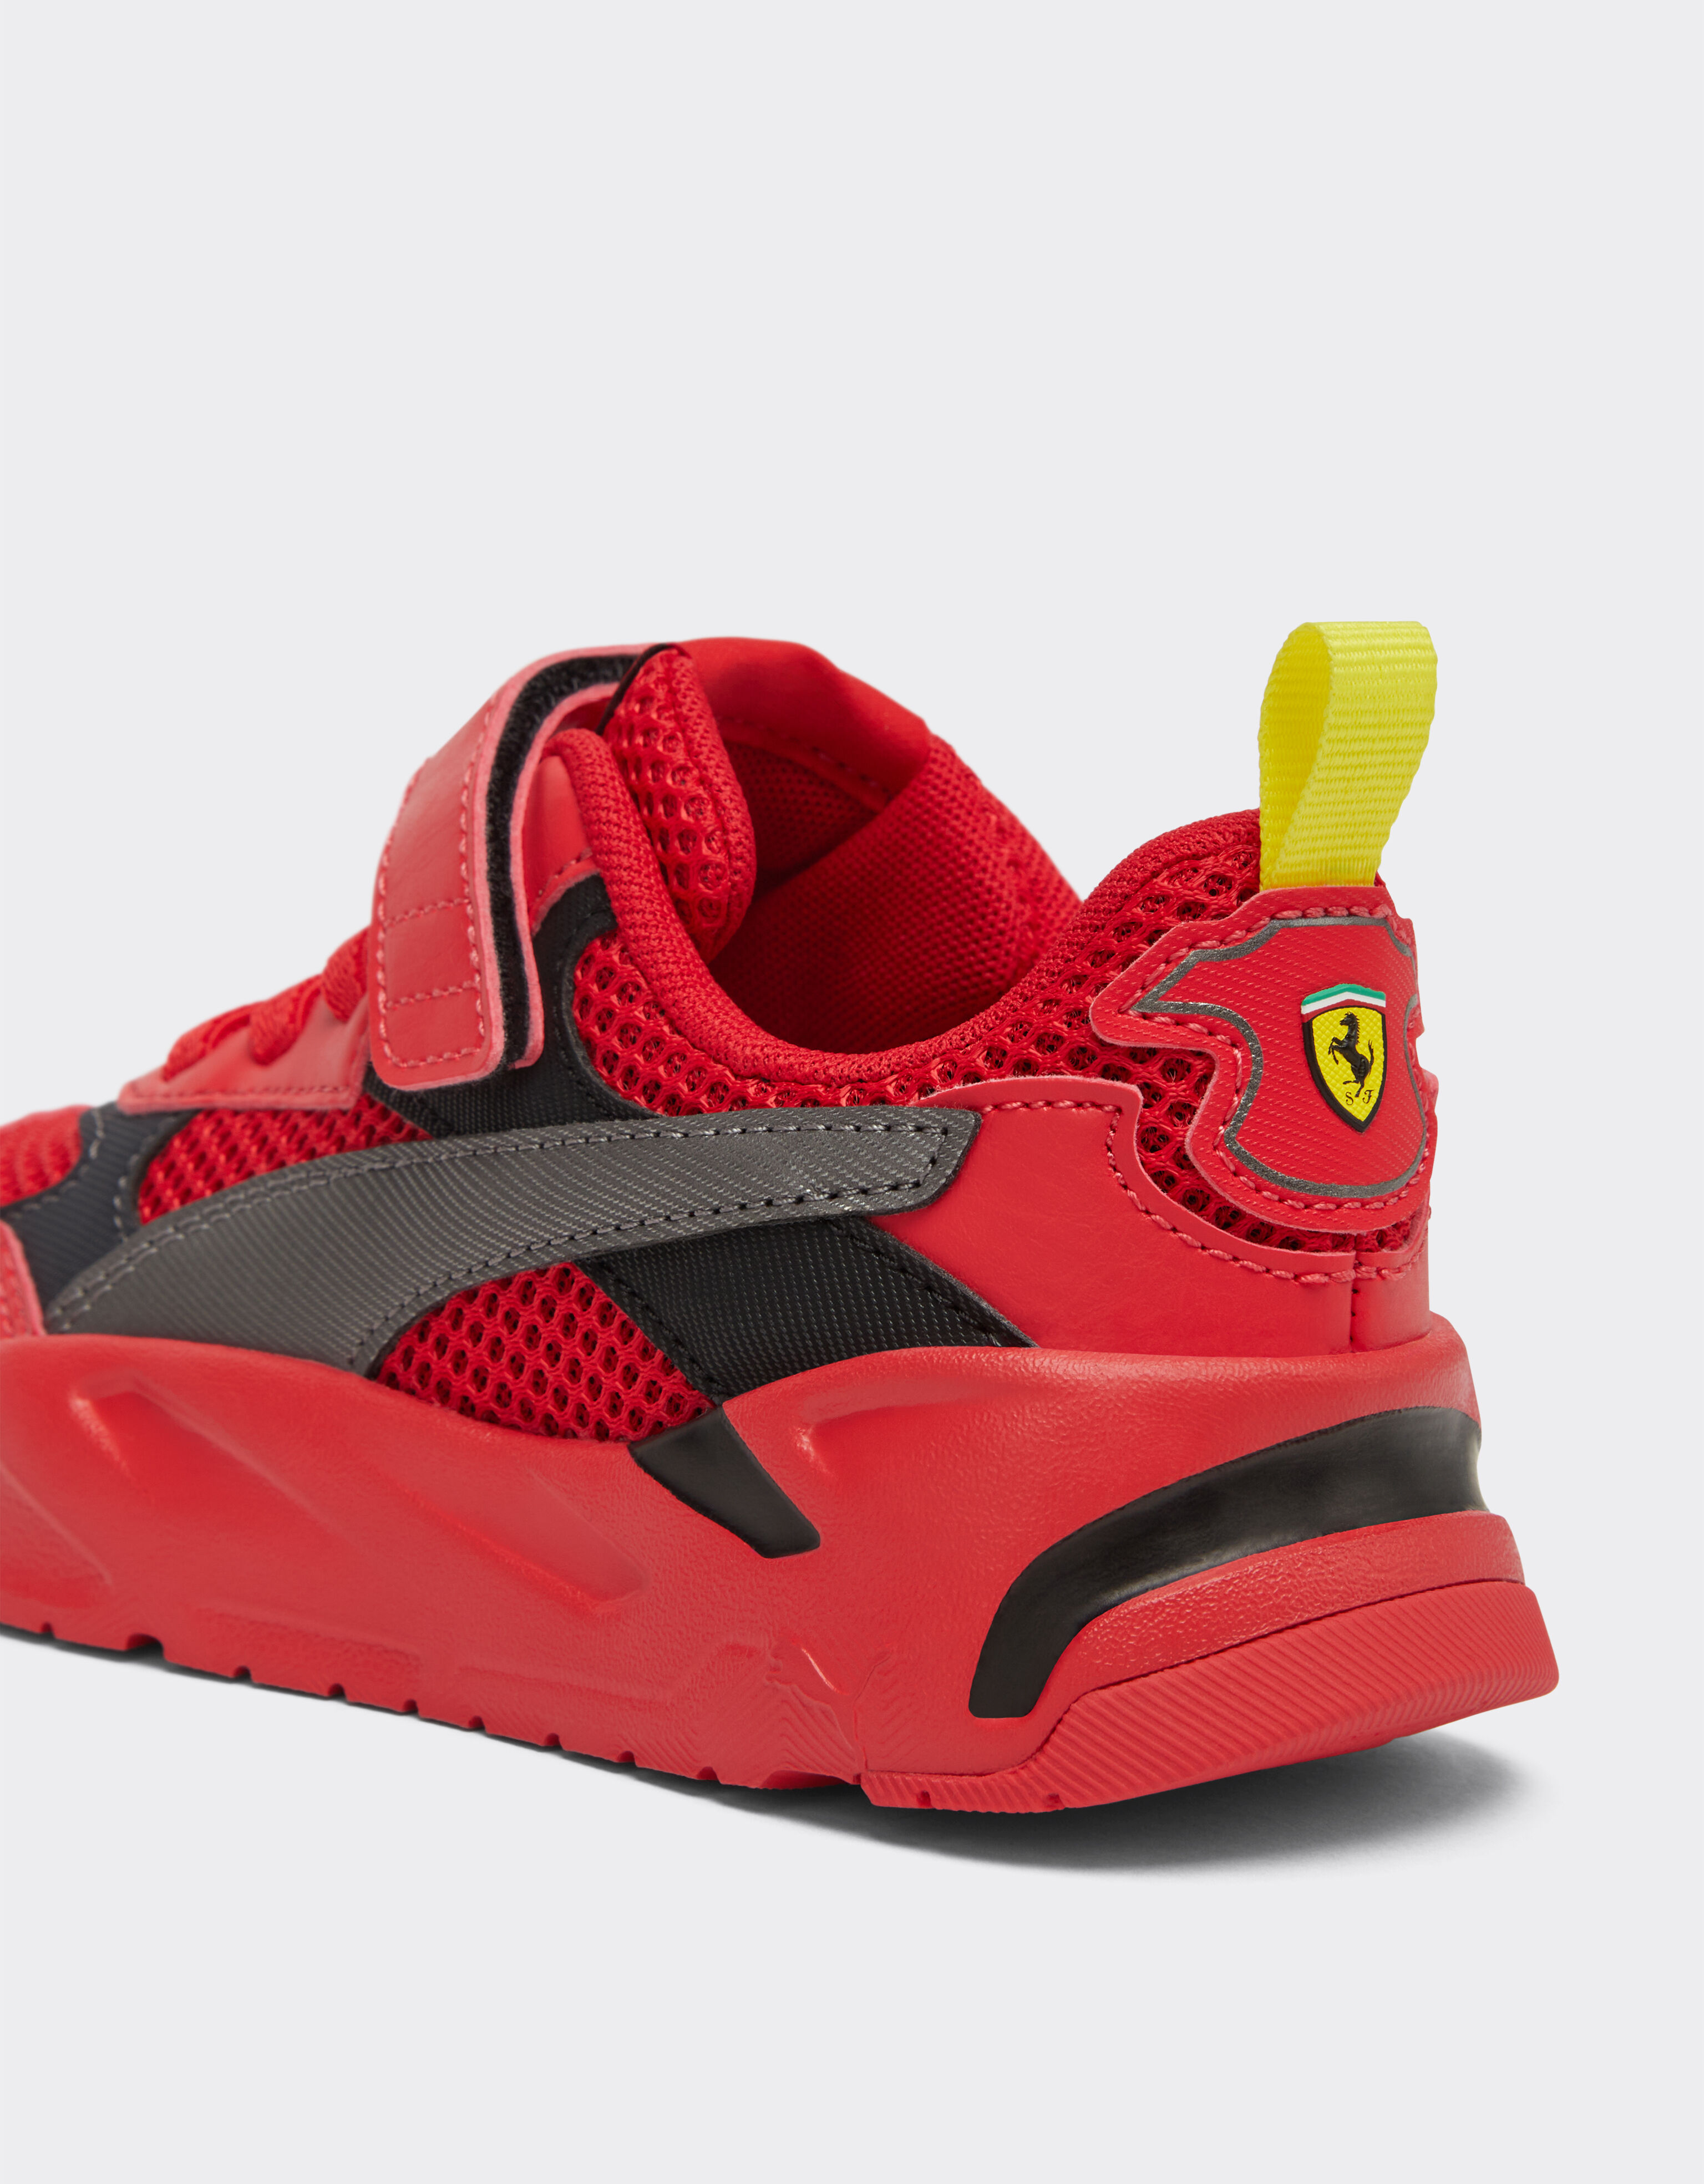 Ferrari Children’s Puma for Scuderia Ferrari Trinity shoes Rosso Corsa F1131fK